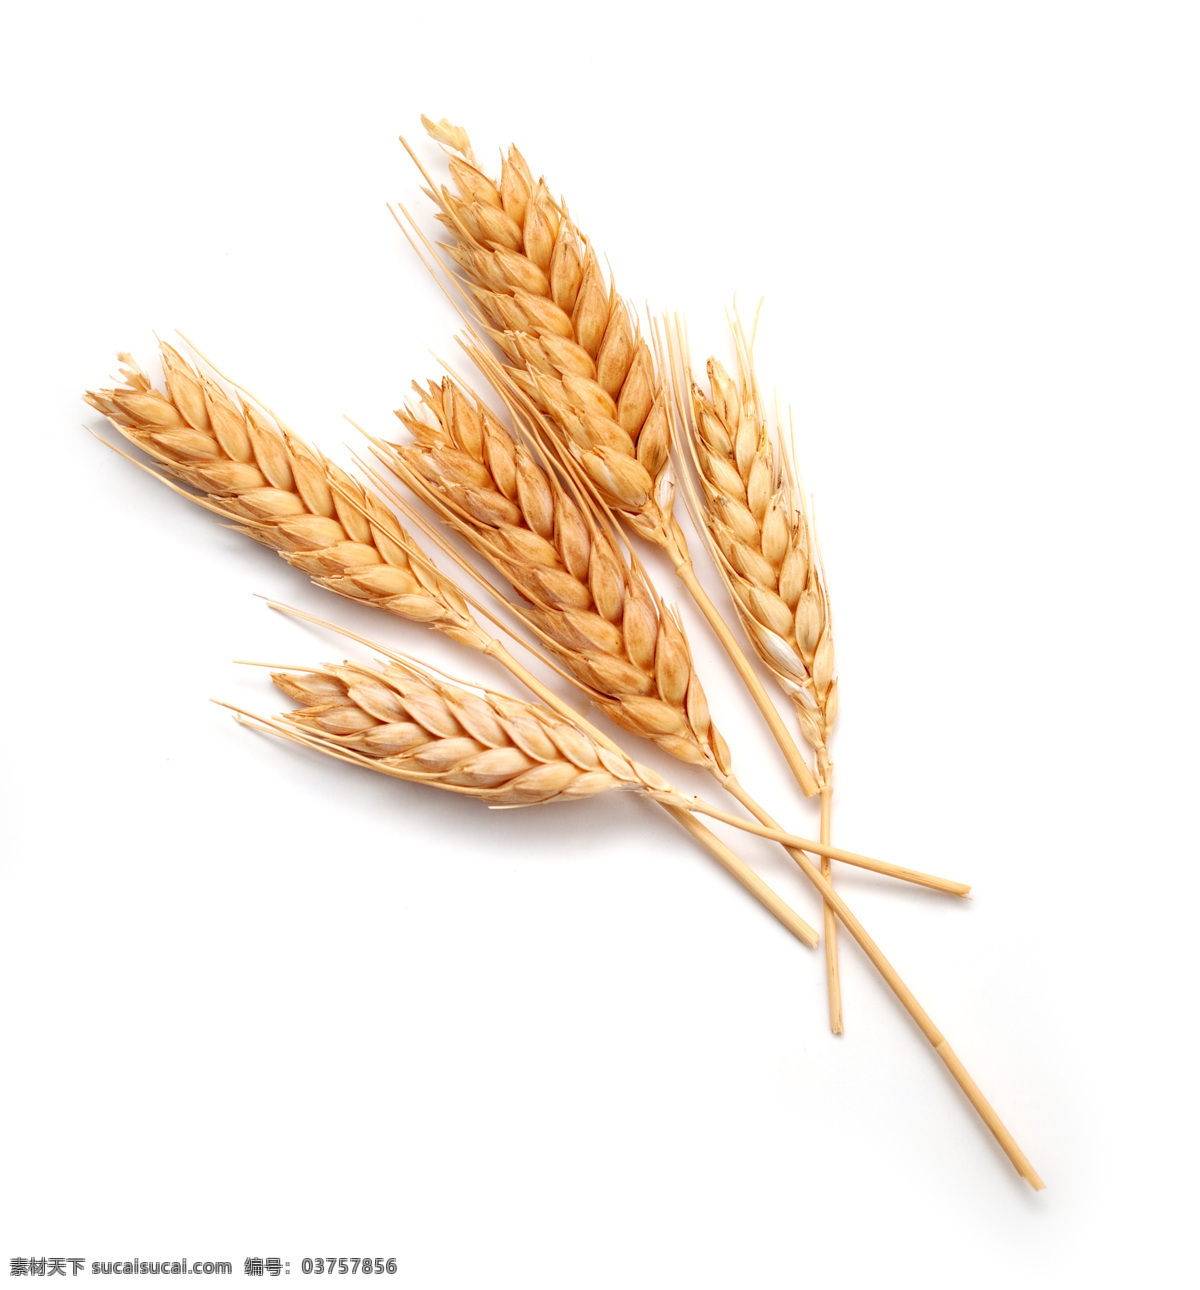 麦穗图片 麦穗 麦田 麦子 丰收 小麦 夏收 农田 粮食 大麦